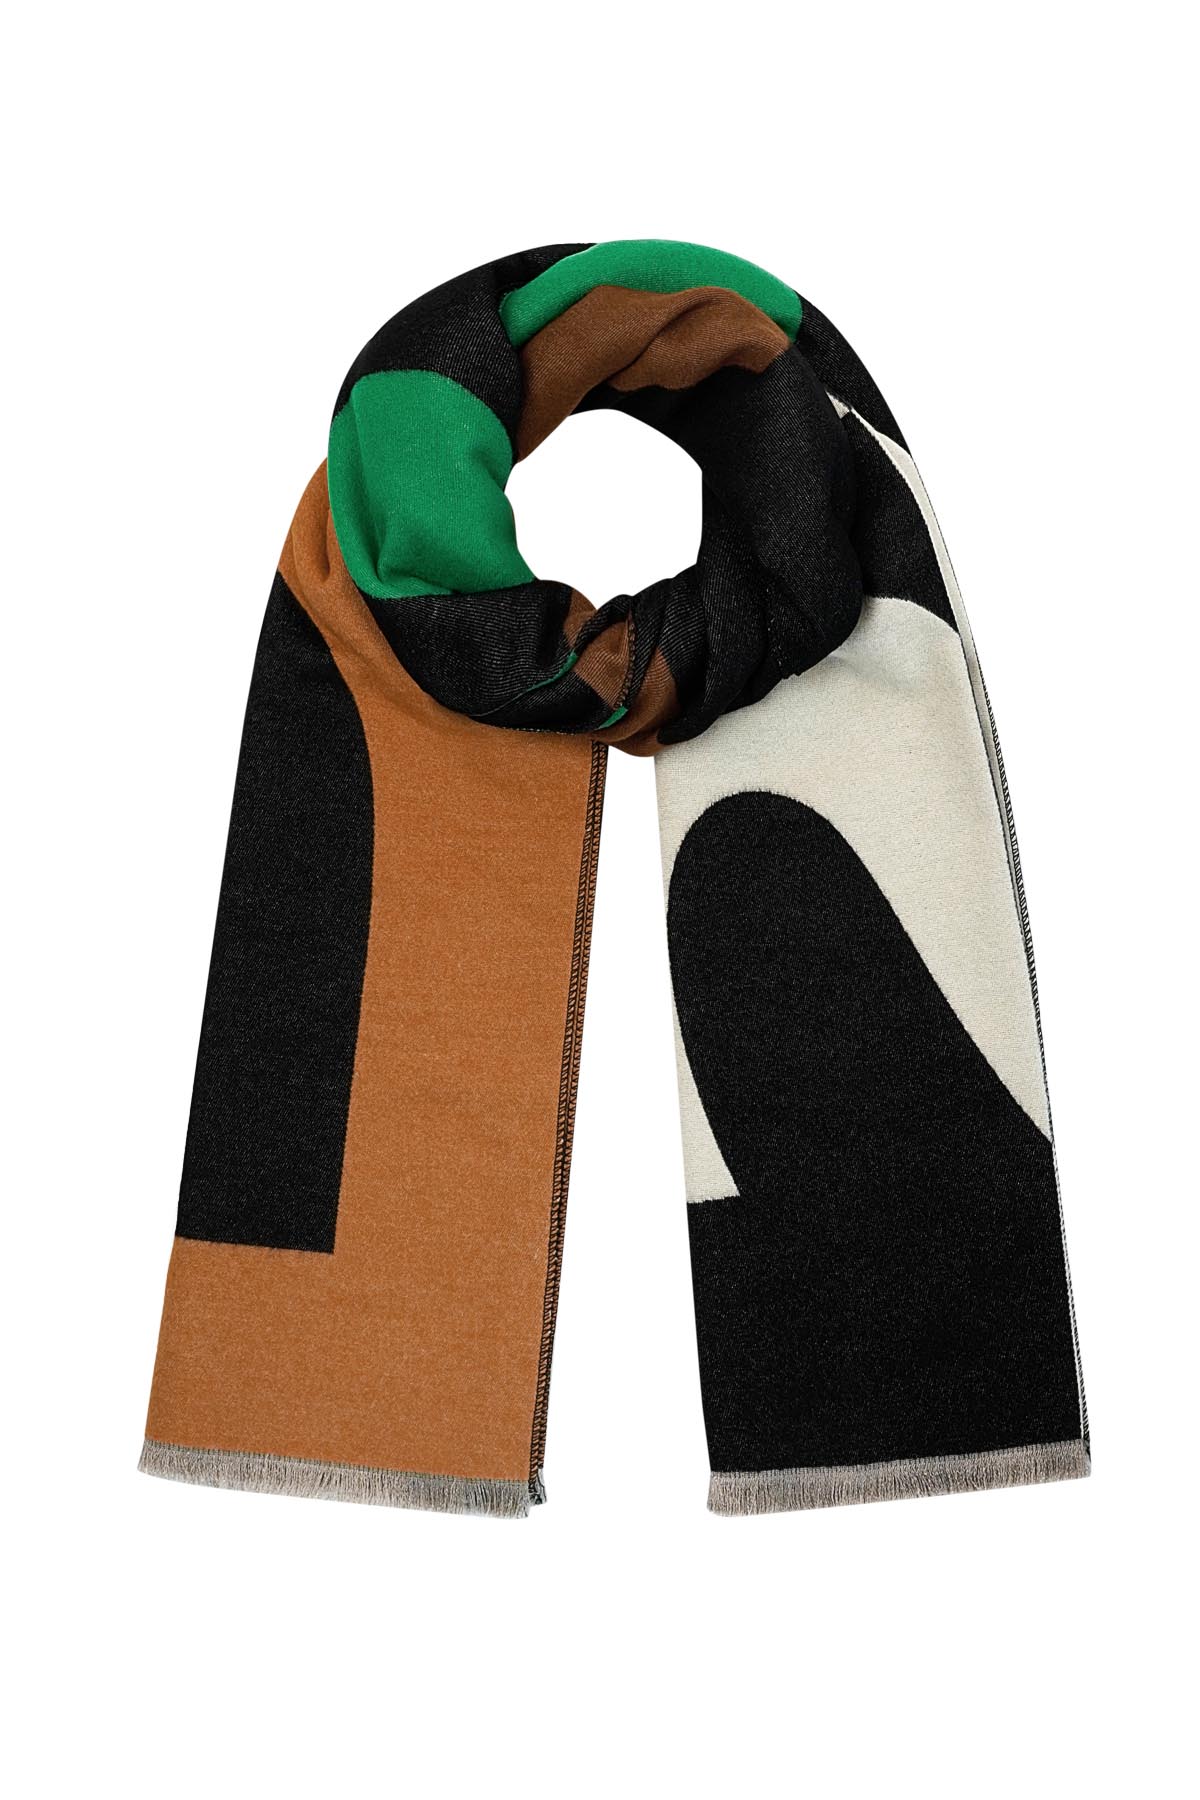 Sjaal met Paris print - groen oranje 